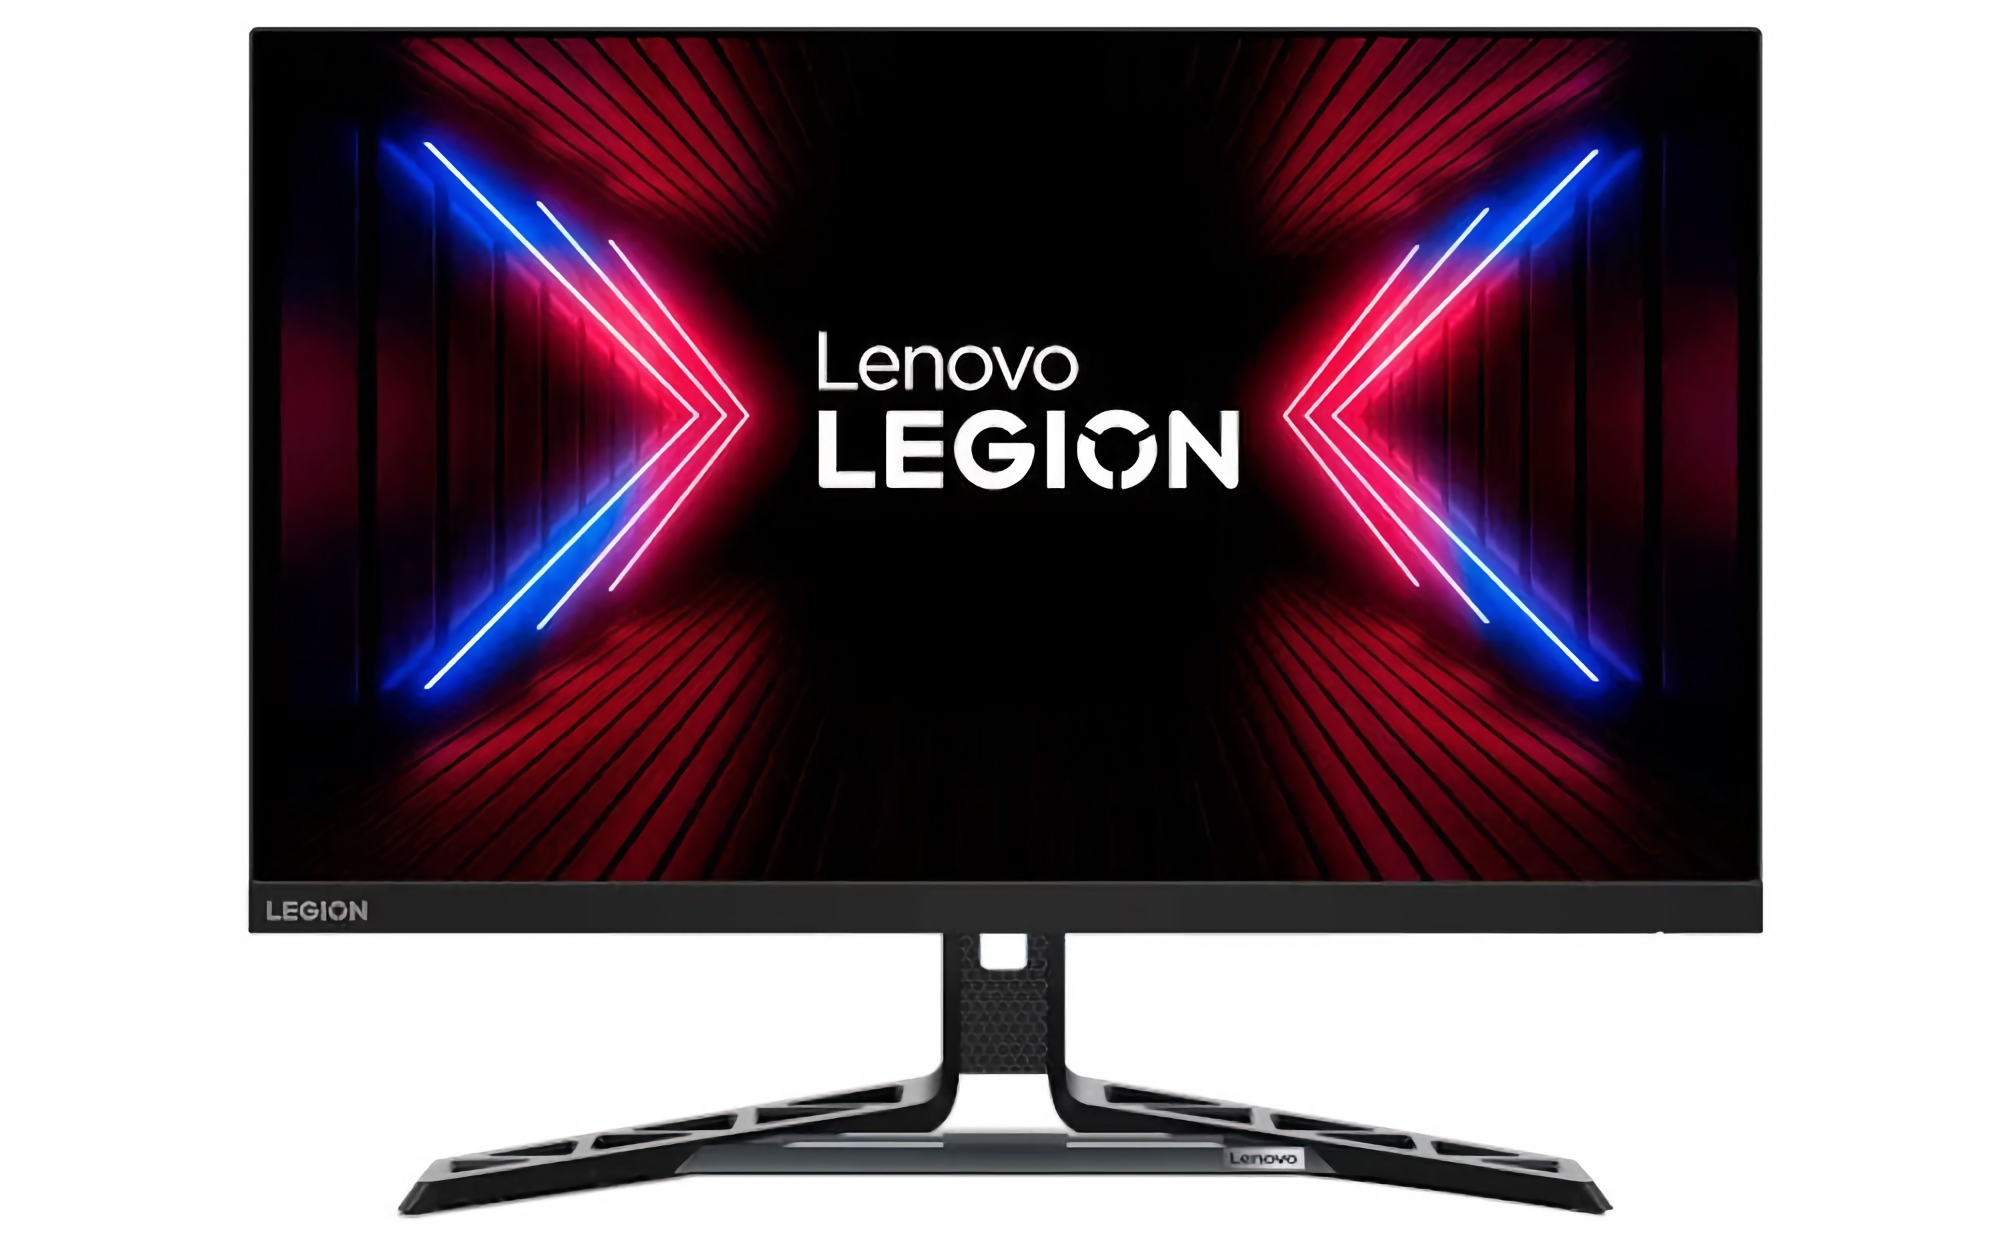 Lenovo har afsløret Legion R27fc-30 med en 27-tommers skærm på 280Hz